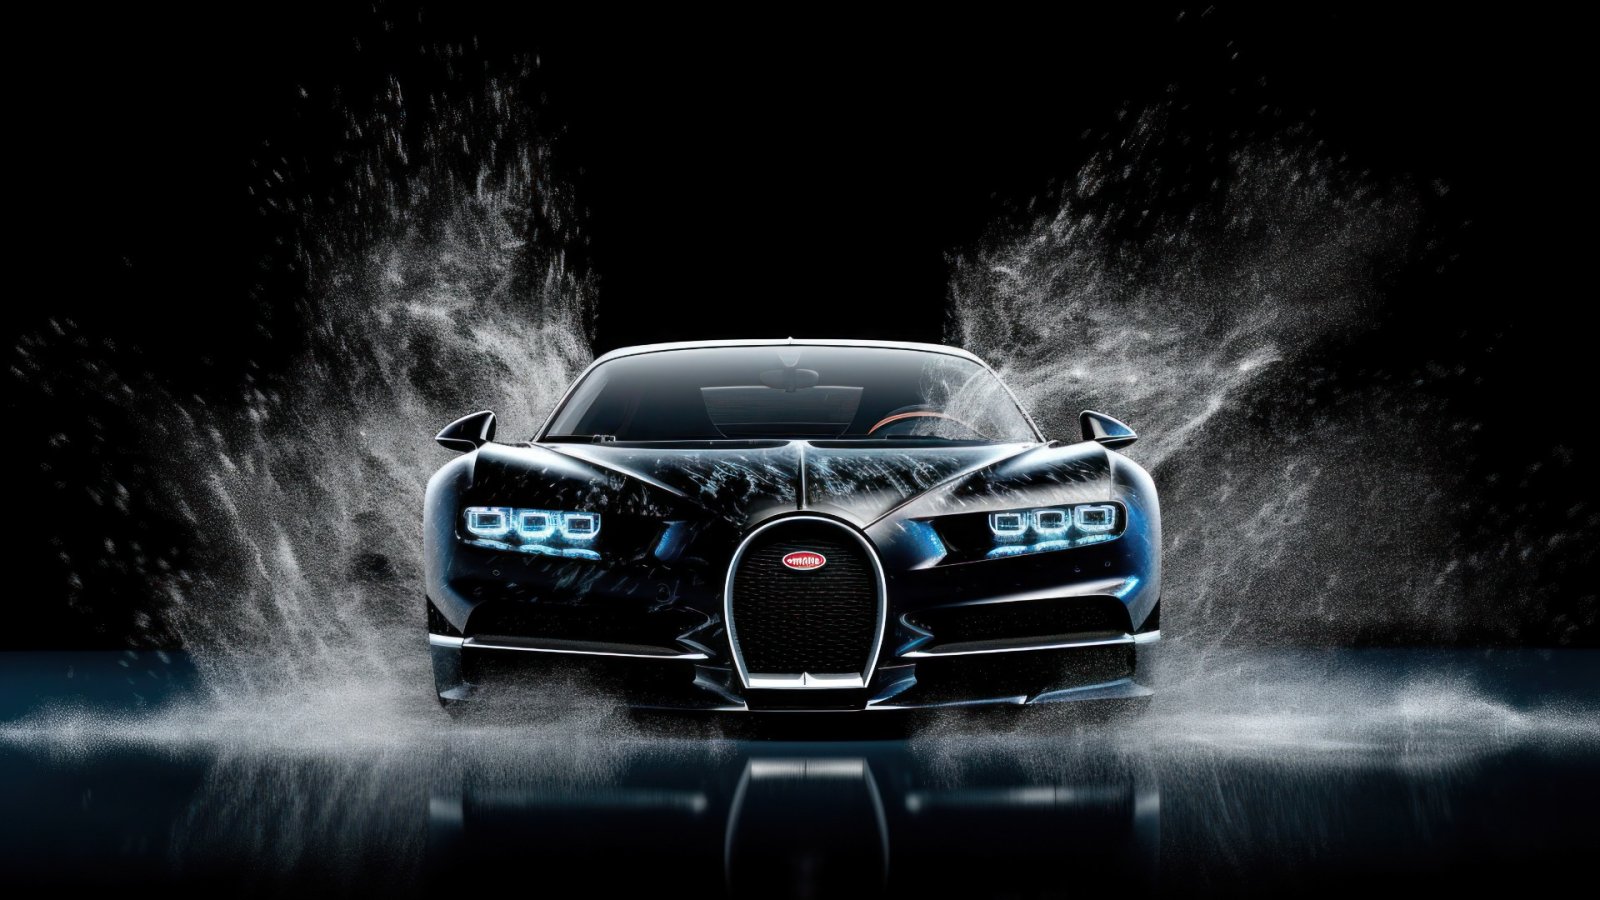 Bugatti revela o inovador Hipercarro Híbrido Tourbillon